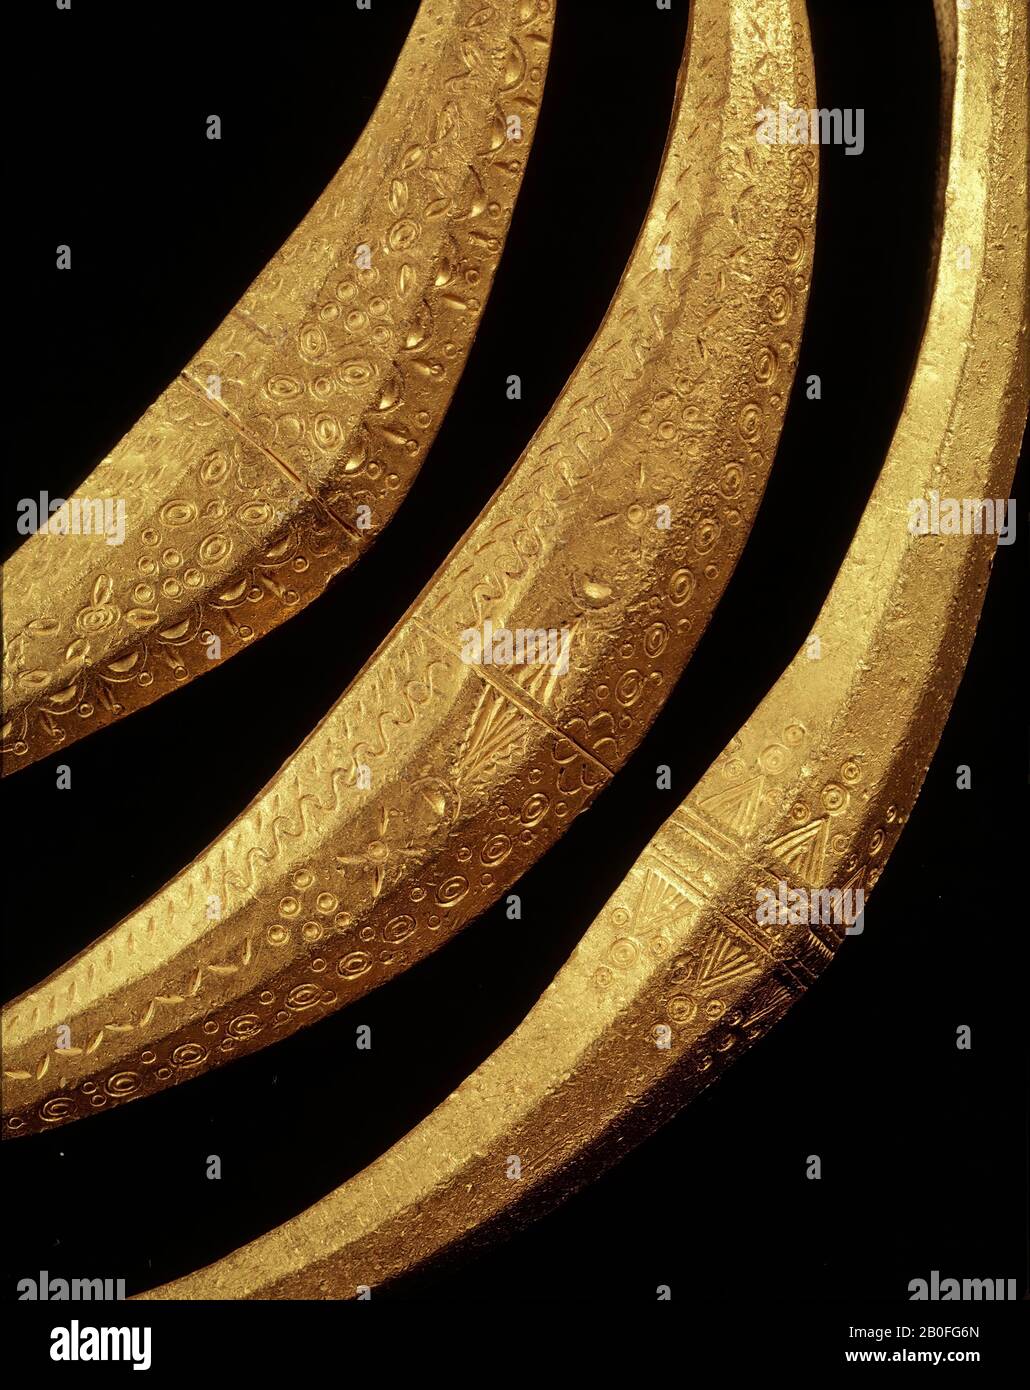 Anello a collo frontale in oro massiccio, realizzato con solidi romani fusi. L'estremità allargata ha un diametro esagonale. In realtà, solo il fronte ha tre sfaccettature, il retro è piatto. La parte allargata si estende su entrambi i lati in un filo tondo, una cui estremità è dotata di un occhio a pera, l'altra di un bottone, che cattura l'occhio. La parte allargata è decorata con un ornamento timbro di vari motivi semplici., anello del collo, metallo, oro, 16,1 x 14 cm, vmea 400-400, Paesi Bassi, Overijssel, Olst-Wijhe, Olst Foto Stock